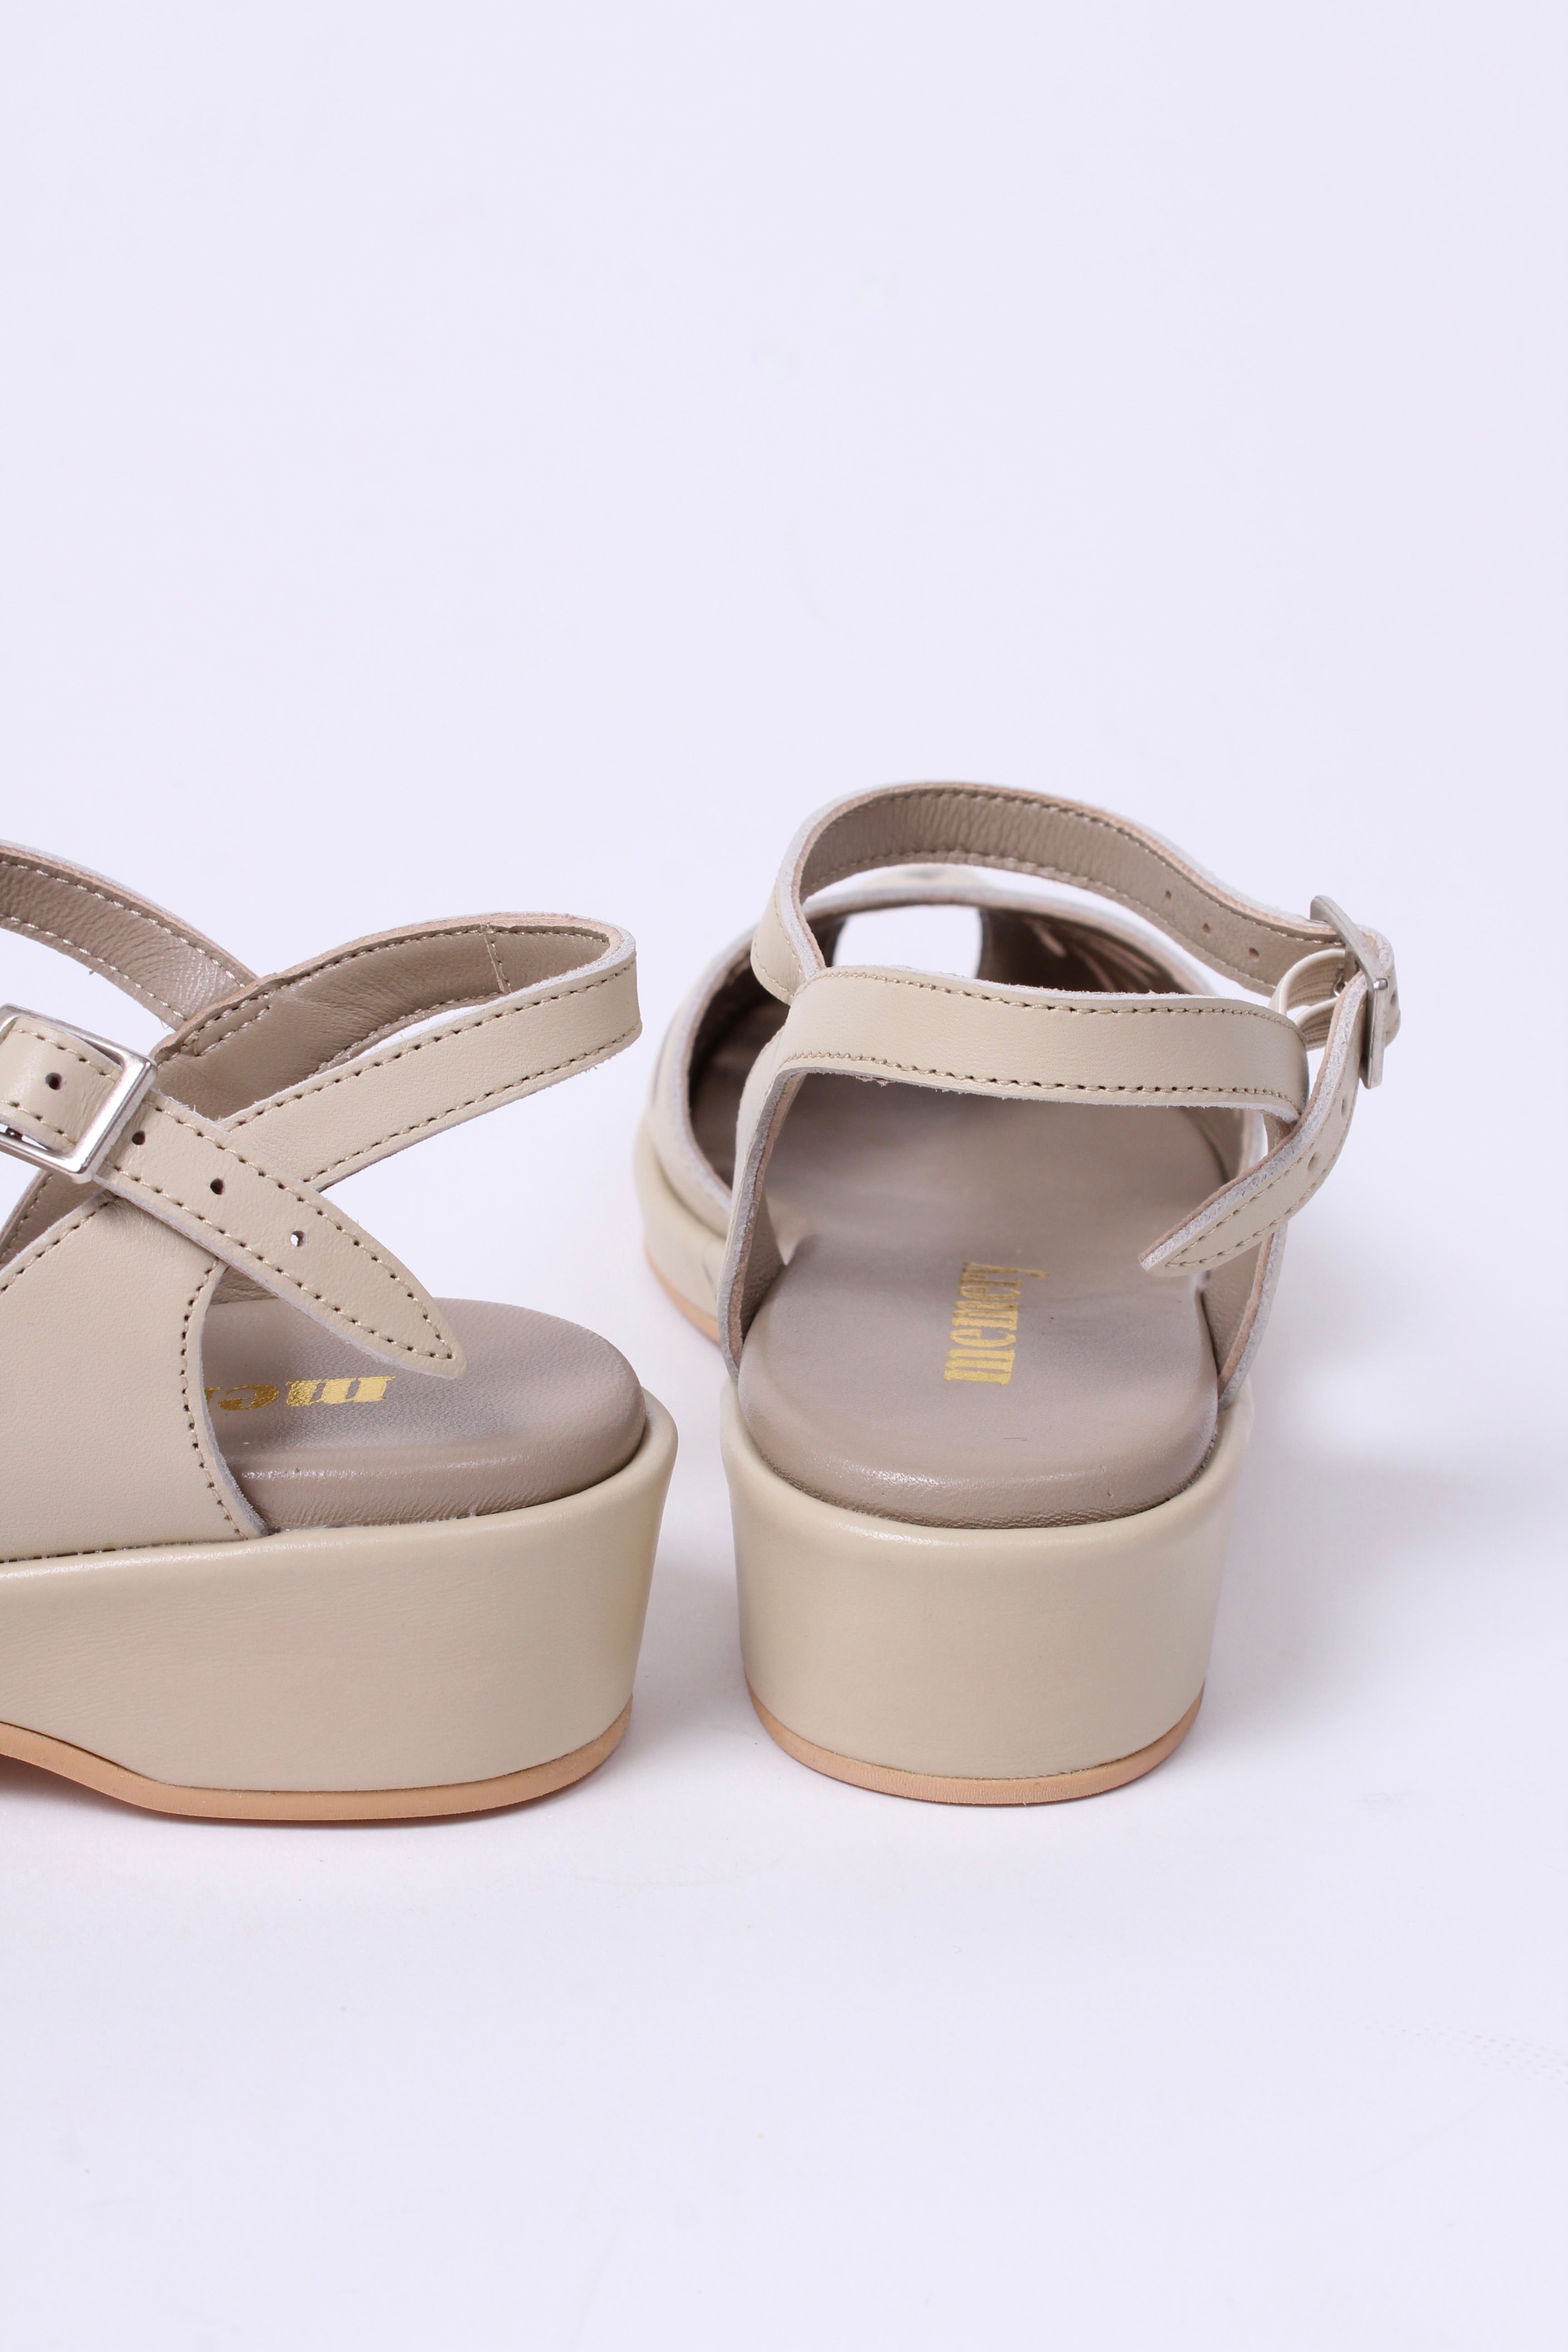 40´er / 50'er style sandal / wedge - Cream - Sidse